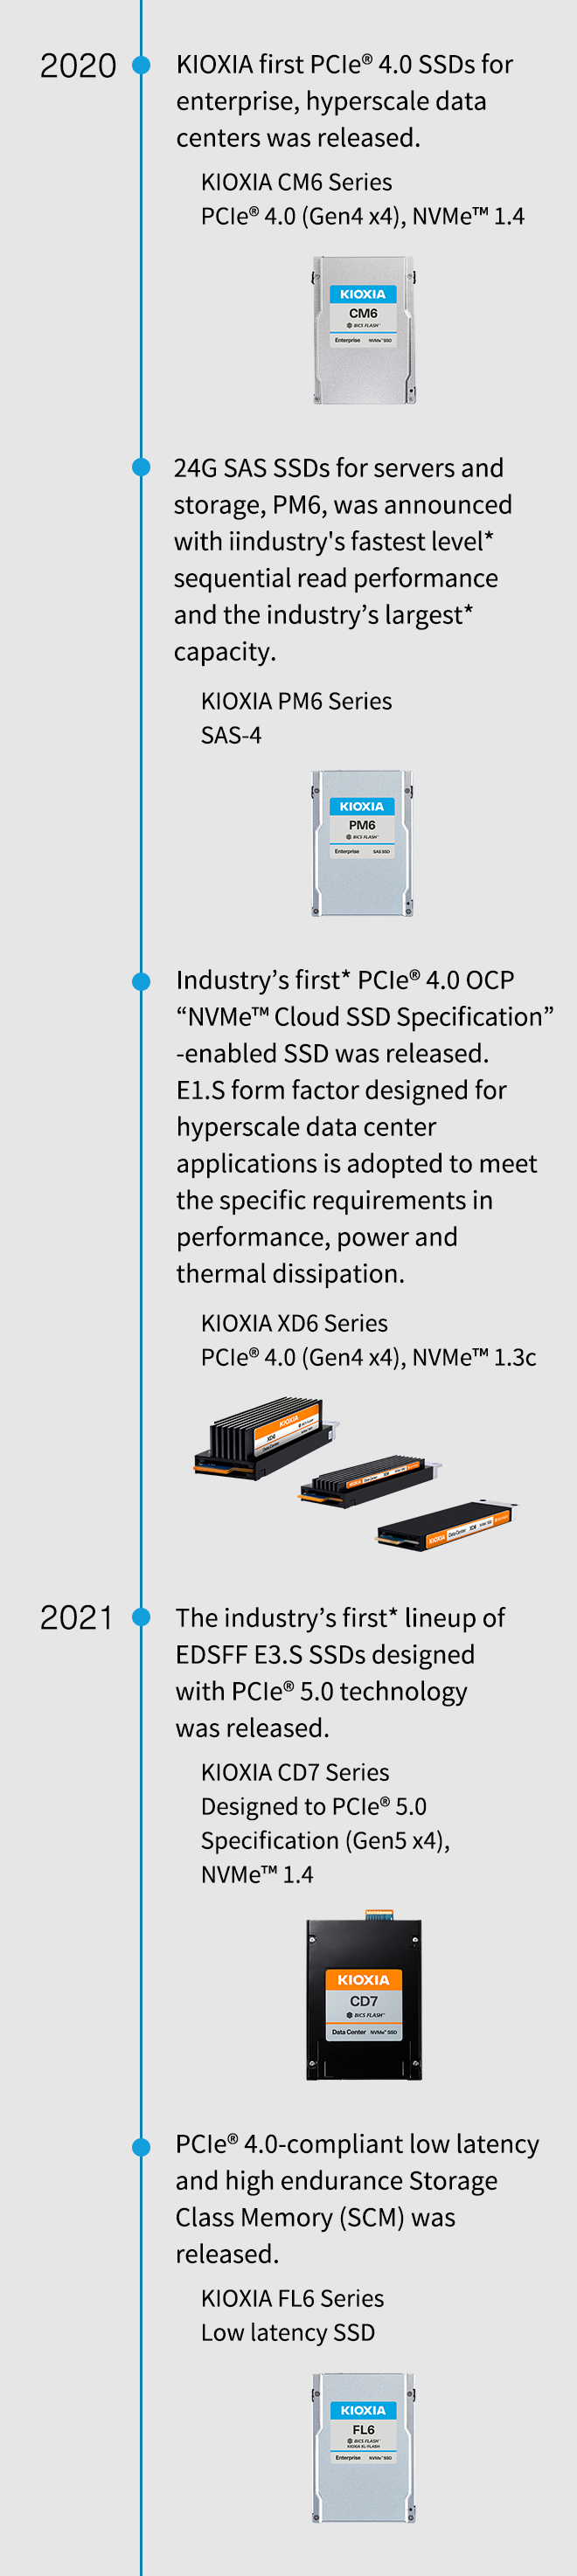 2020. Les premiers disques SSD PCIe® 4.0 de KIOXIA pour les centres de données hyperscale d’entreprise ont été lancés. Série KIOXIA CM6 PCIe® 4.0 (Gen4 x4), NVMe™ 1.4. Les disques SSD SAS 24G pour serveurs et stockage, PM6, ont été annoncés avec les performances de lecture séquentielle de niveau* les plus rapides du secteur et la plus grande capacité* du secteur. Série KIOXIA PM6 SAS-4. Le premier* SSD compatible PCIe® 4.0 OCP «  NVMe™ Cloud SSD Specification » de l'industrie a été lancé. Le format E1.S conçu pour les applications de centre de données hyperscale est adopté pour répondre aux exigences spécifiques en matière de performance, de puissance et de dissipation thermique. Série KIOXIA XD6 PCIe® 4.0 (Gen4 x4), NVMe™ 1.3c. 2021. La première* gamme de SSD EDSFF E3.S du secteur, conçue avec la technologie PCIe® 5.0, a été lancée. Série KIOXIA CD7 conçue selon les spécifications PCIe® 5.0 (Gen5 x4), NVMe™ 1.4. La mémoire de classe de stockage (SCM) à faible latence et haute endurance compatible PCIe® 4.0 a été lancée. Série KIOXIA FL6 SSD à faible latence